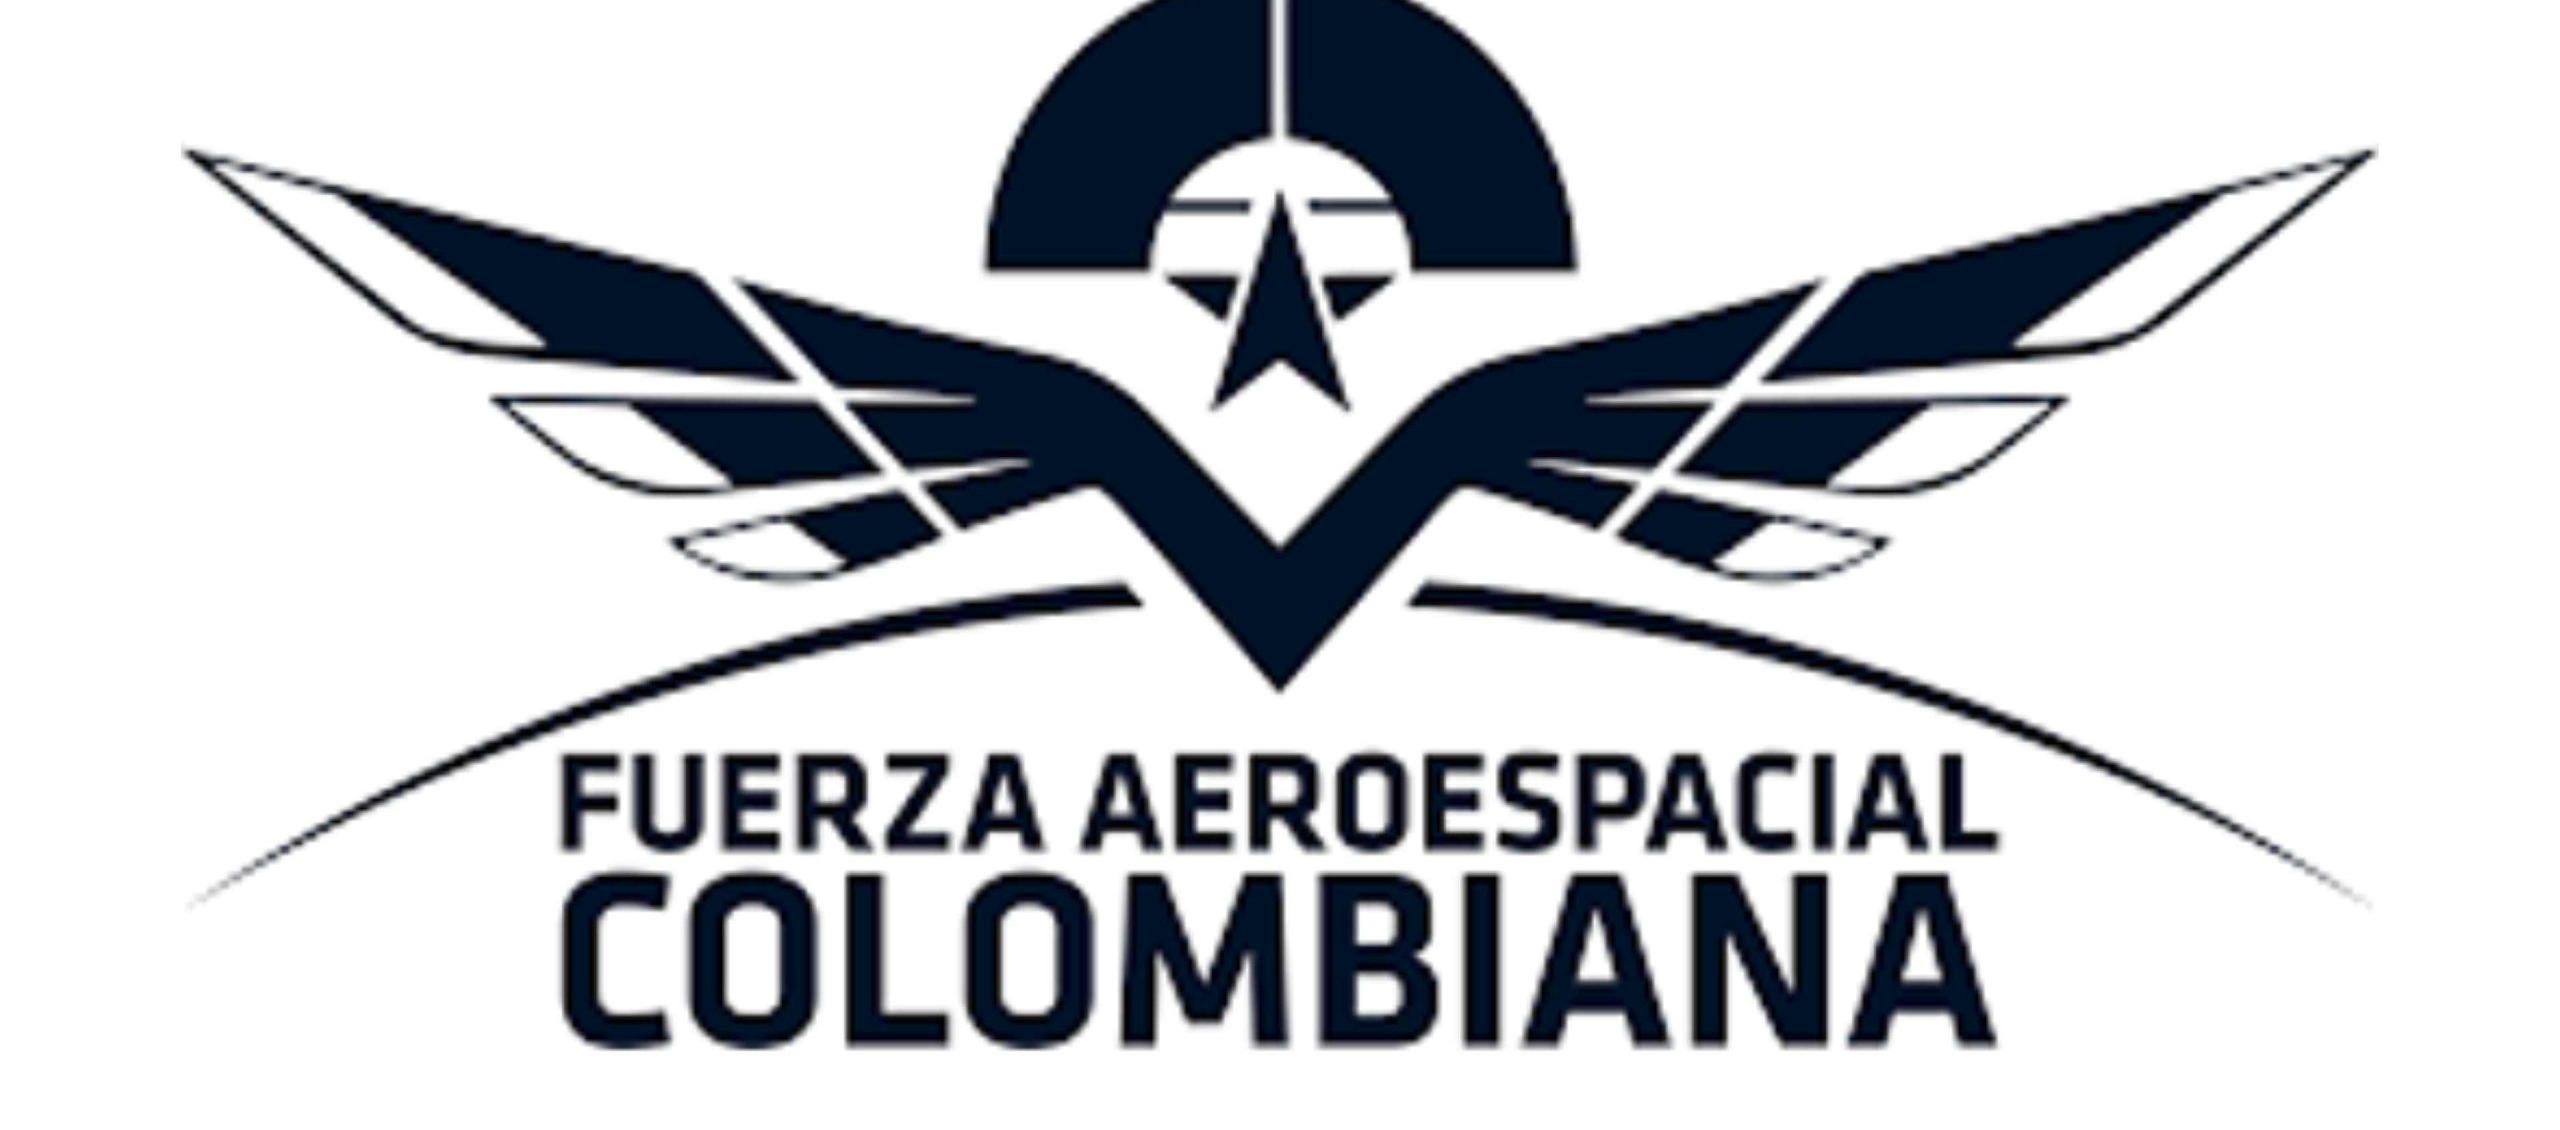 Símbolo de la Fuerza Aeroespacial Colombiana.